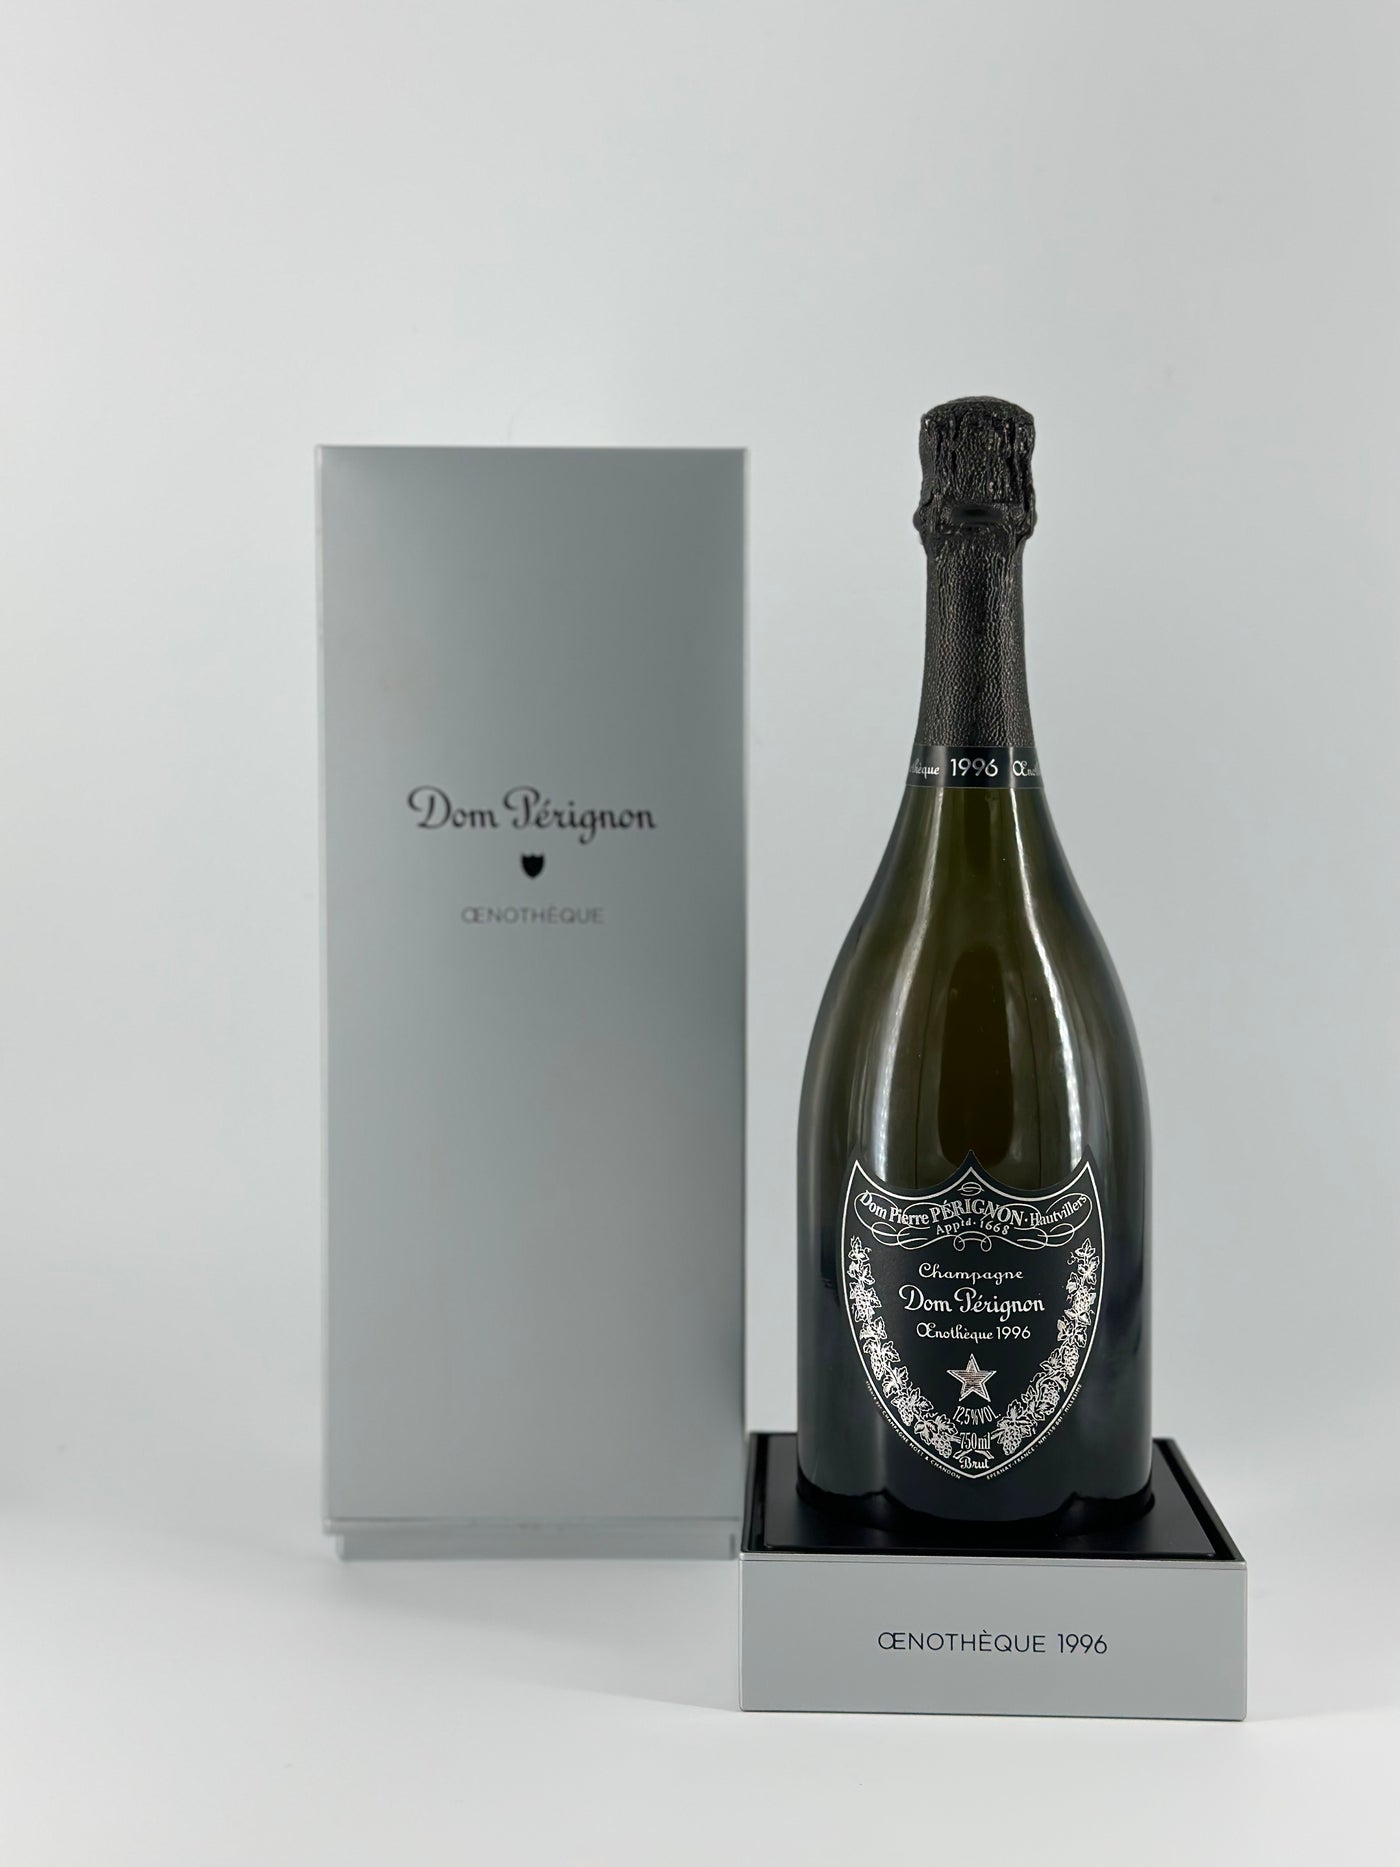 Dom Pérignon Oenothèque 1996 Champagne AOC Oenothèque 1996 